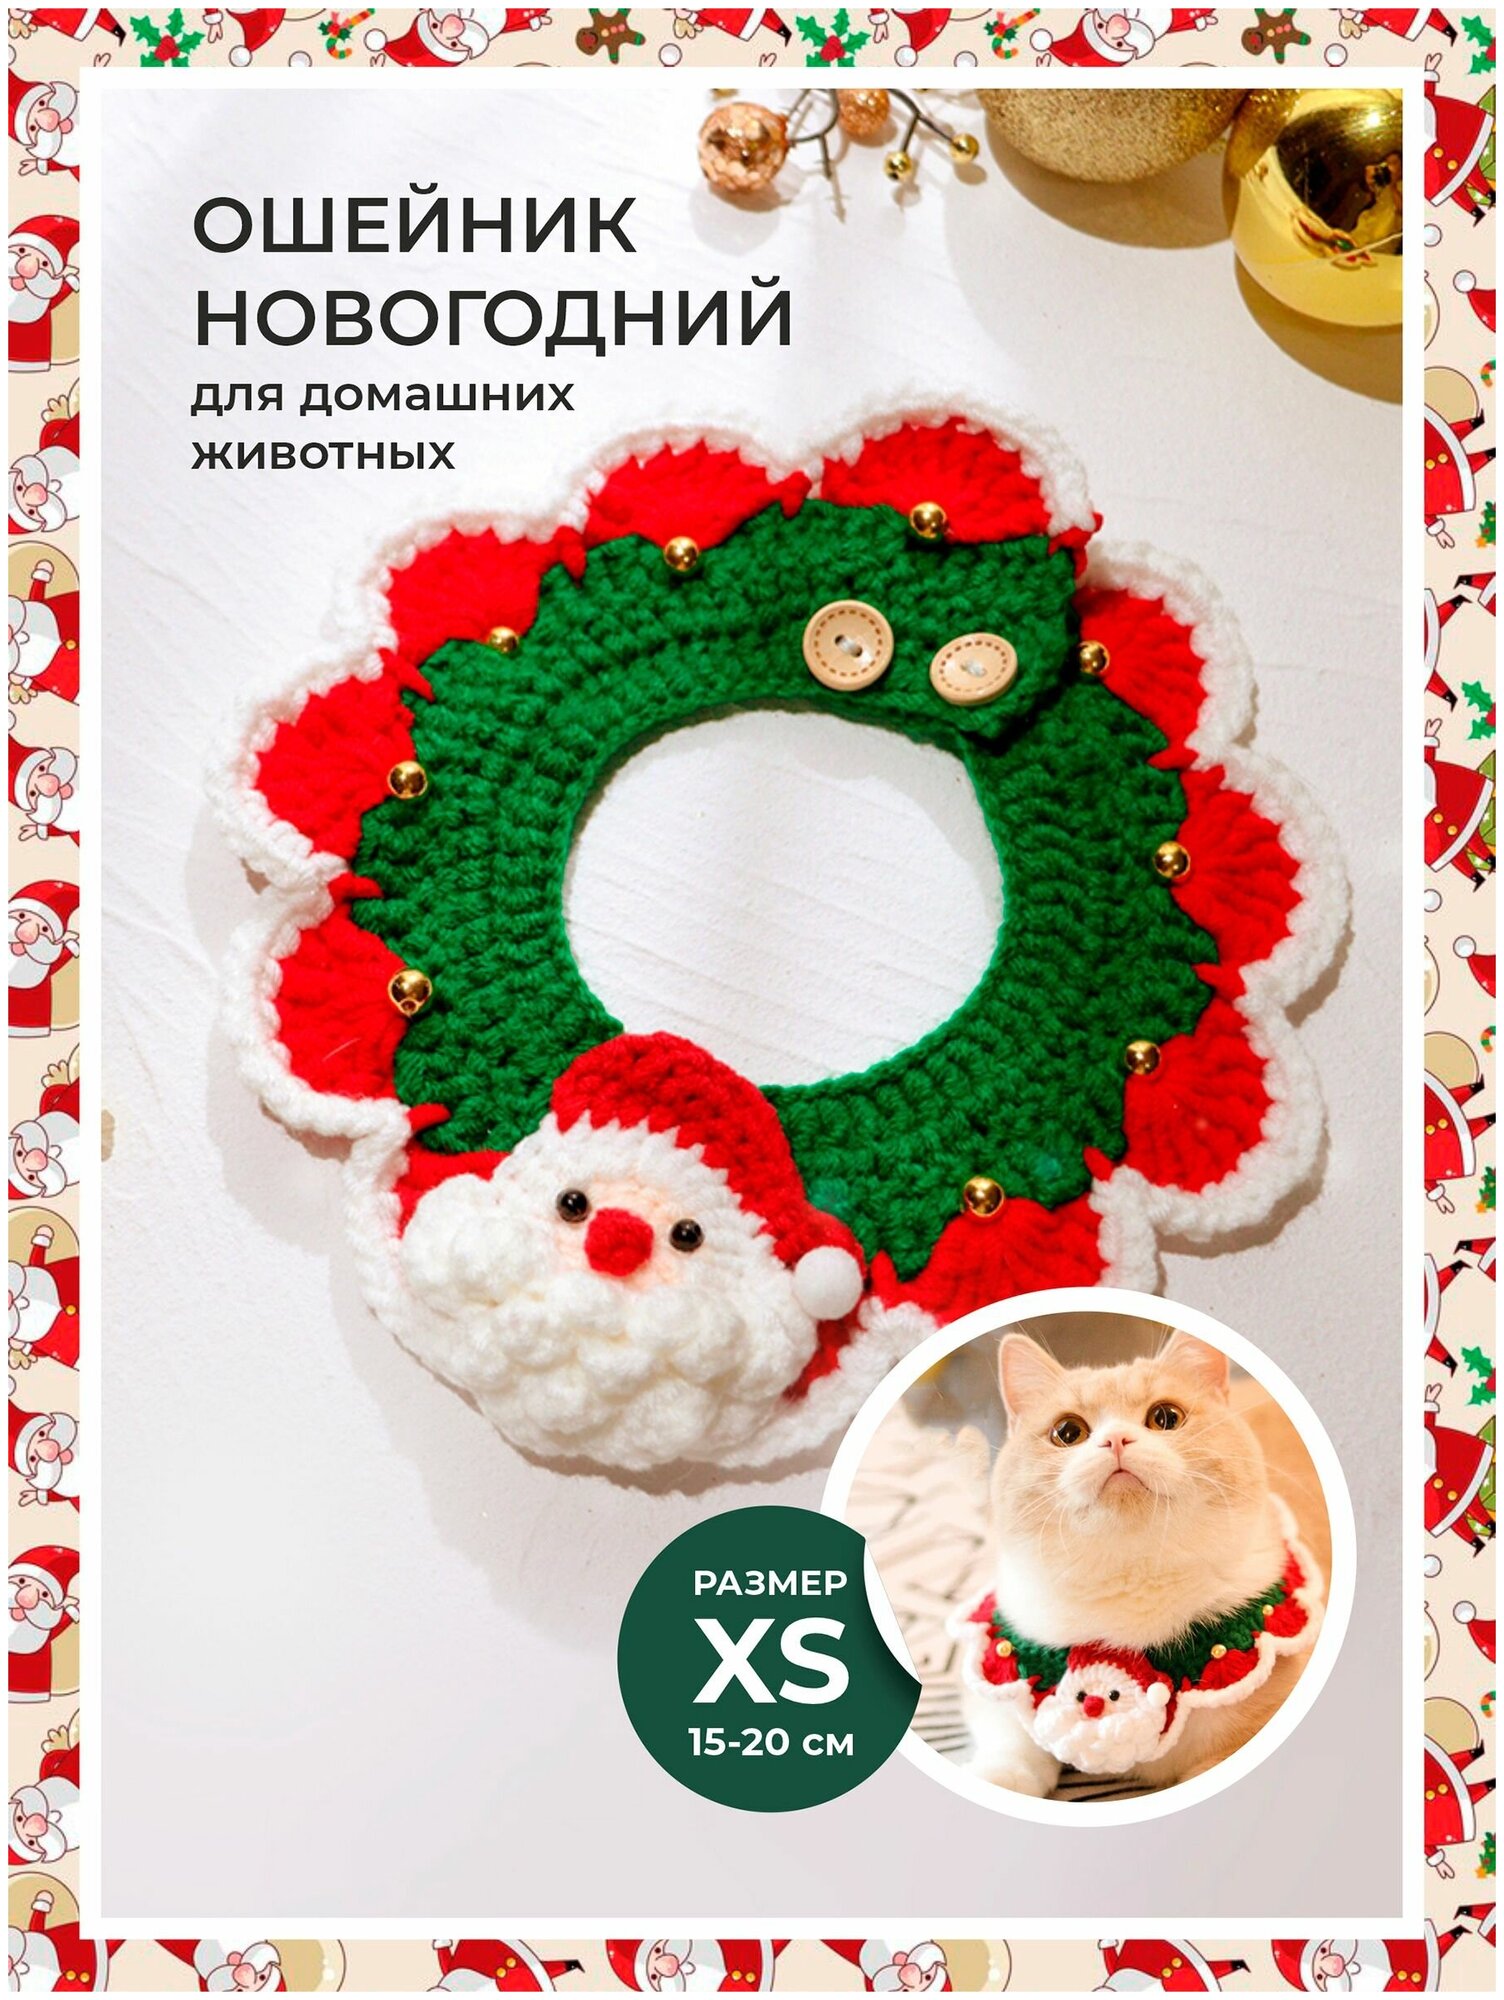 Праздничный ошейник для домашних животных на Новый год и Рождество. Размер XS